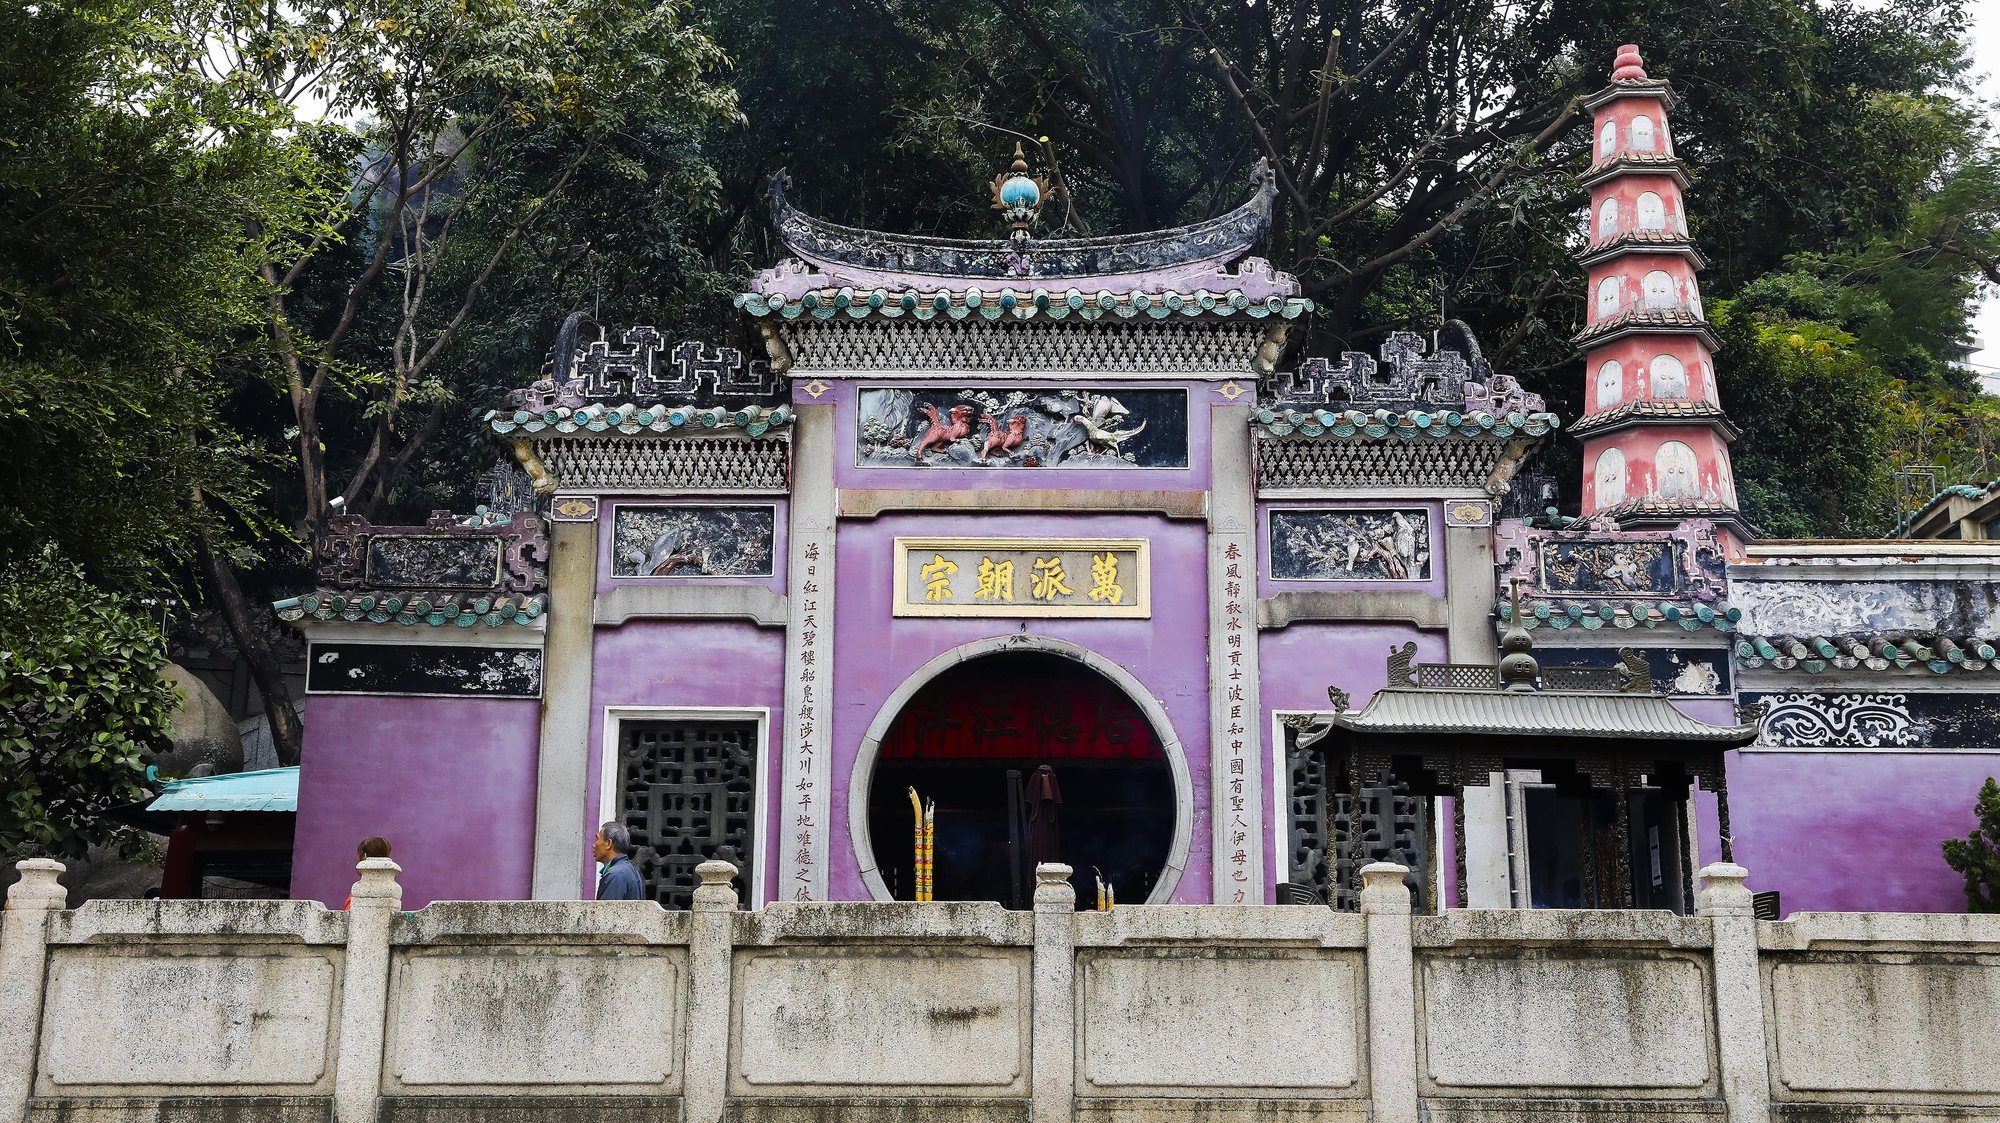 Pavilhão Budista Zhengjiao Chanlin no Templo de A-Má, Deusa protetora dos navegantes em Macau, China.17 de dezembro de 2019. JOÃO RELVAS/LUSA